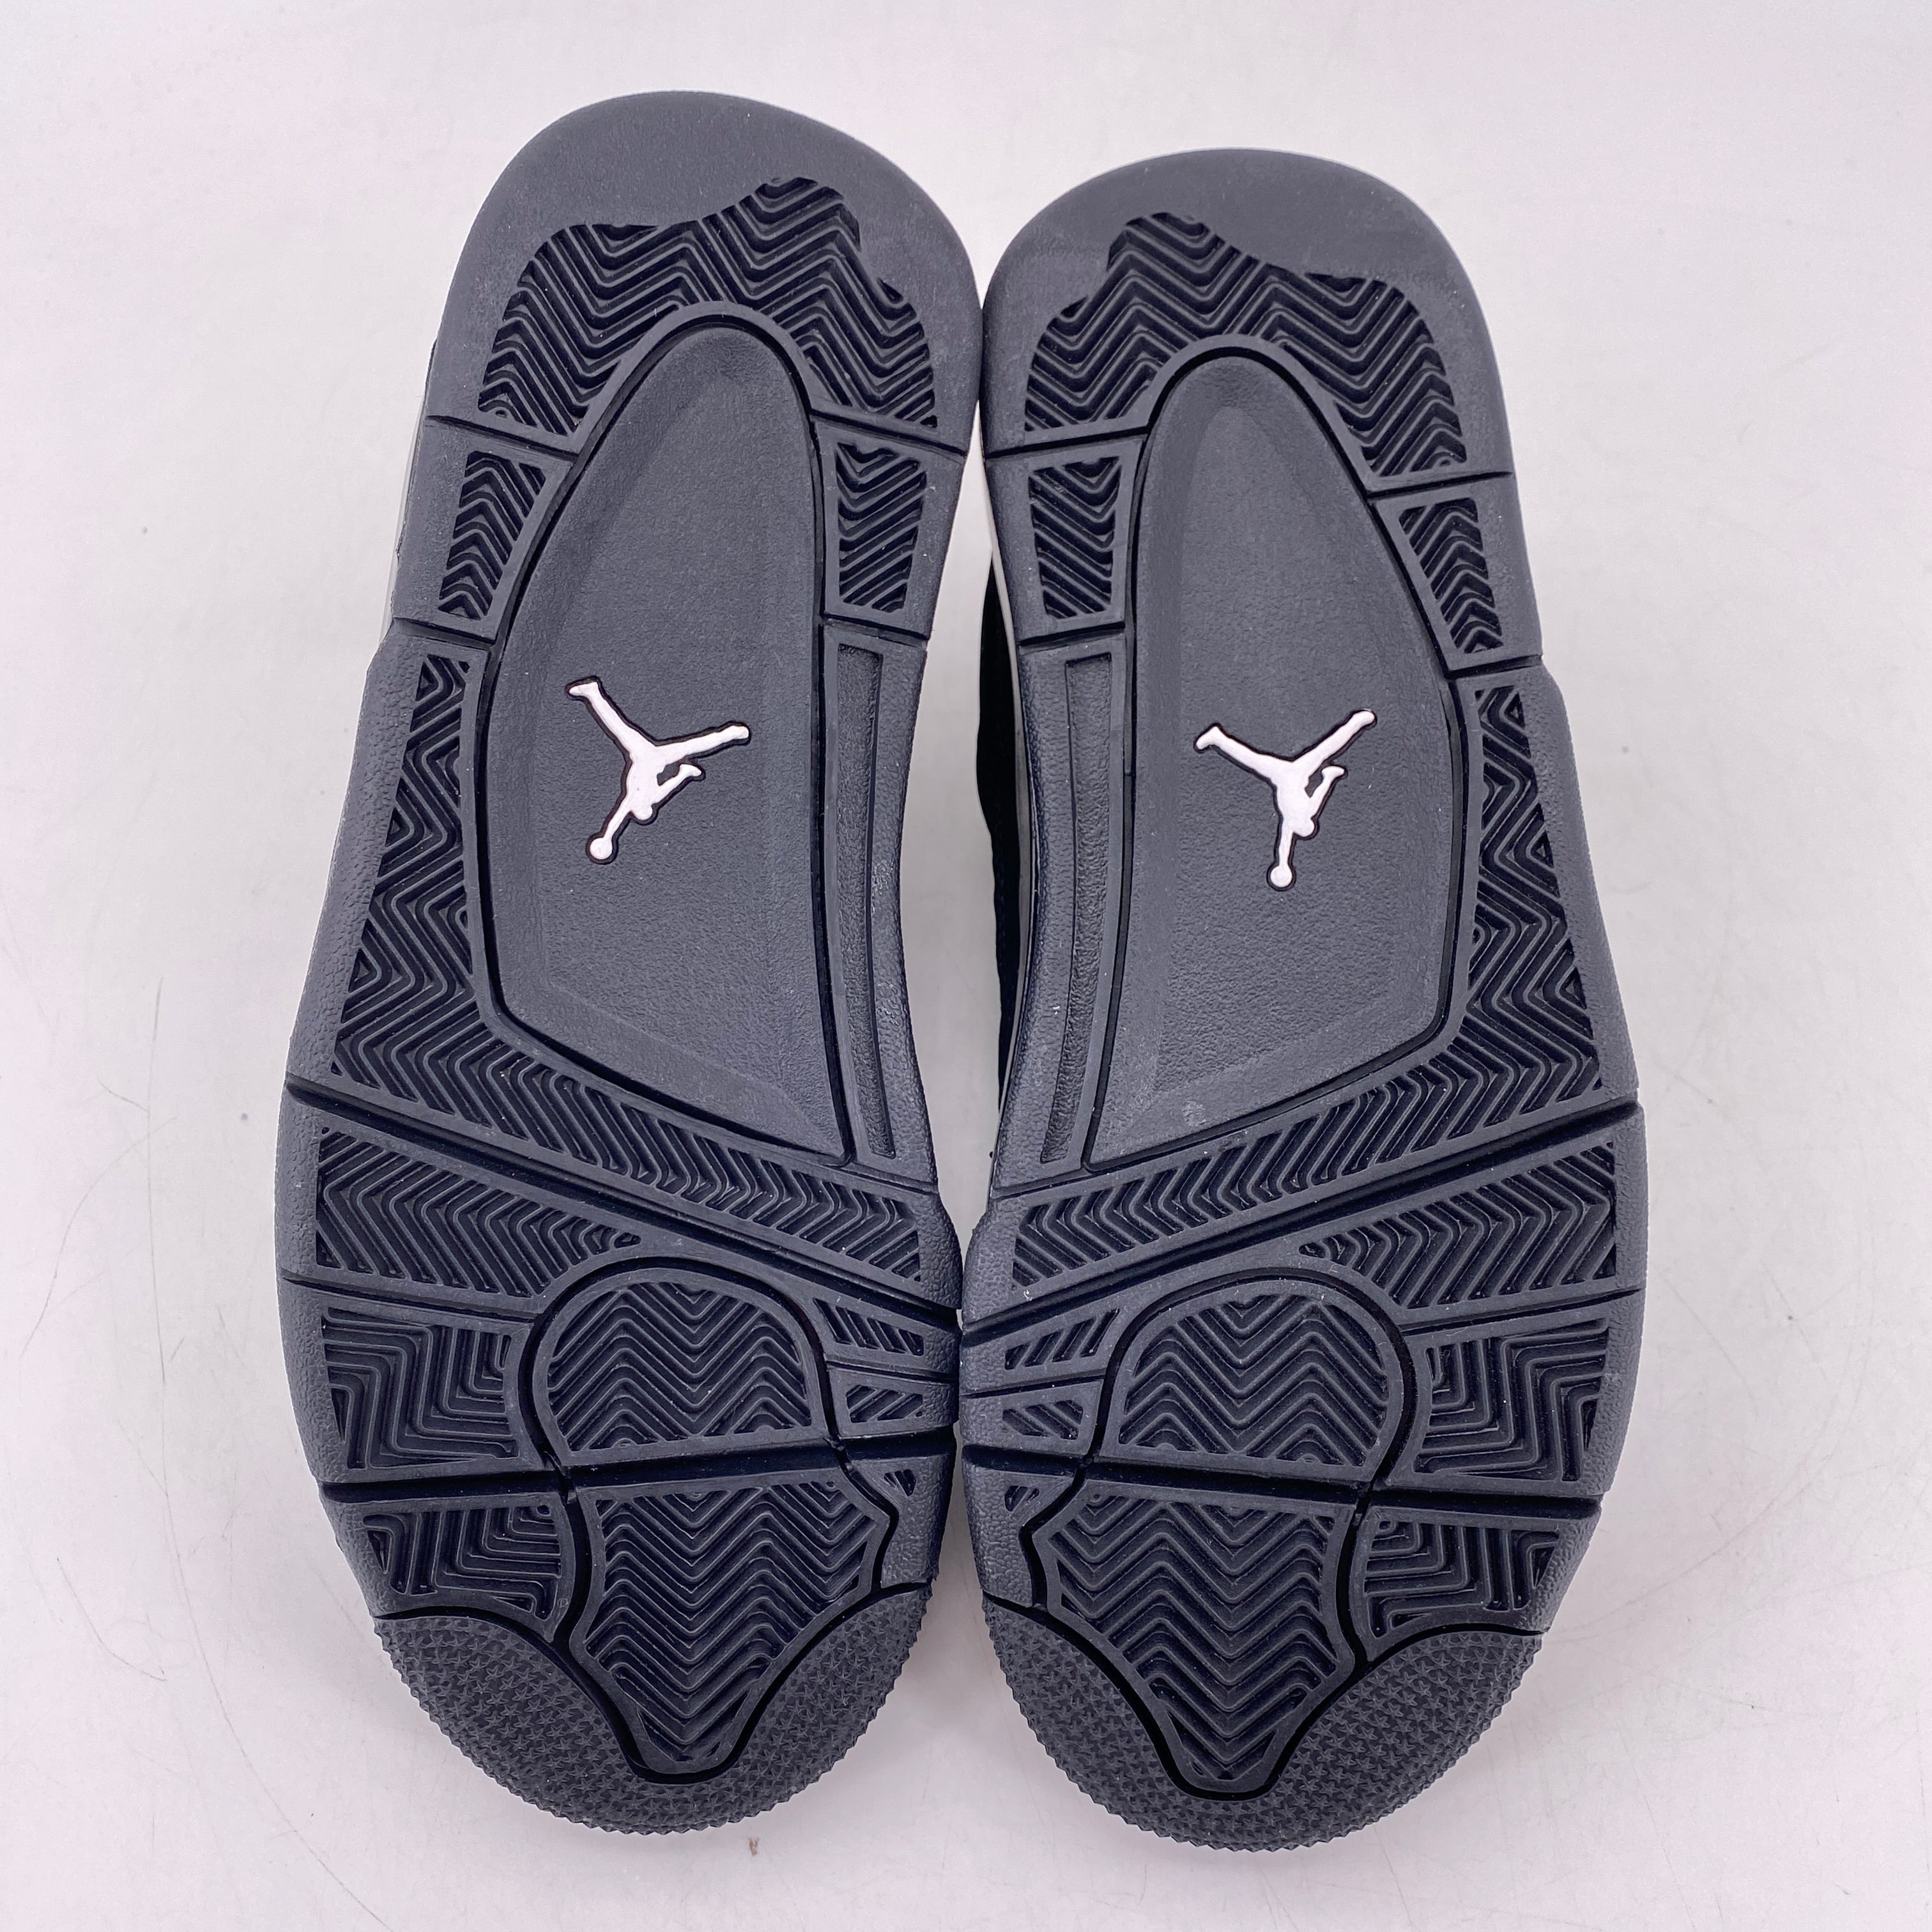 Air Jordan (GS) 4 Retro &quot;Black Cat&quot; 2020 New Size 5Y